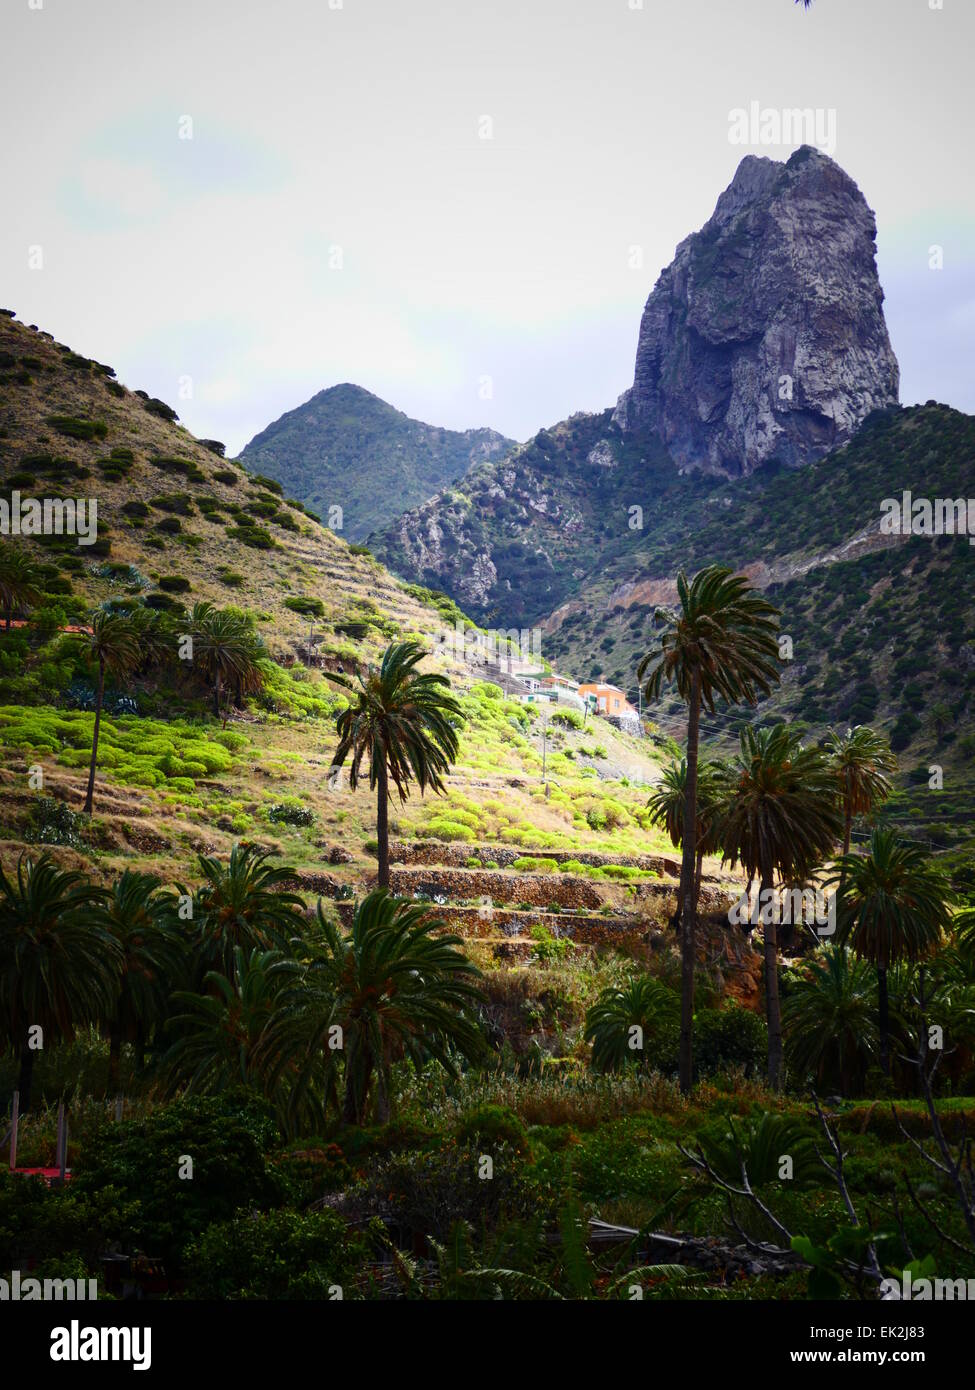 Roque Cano in Vallehermoso village La Gomera island Canary islands Spain Stock Photo